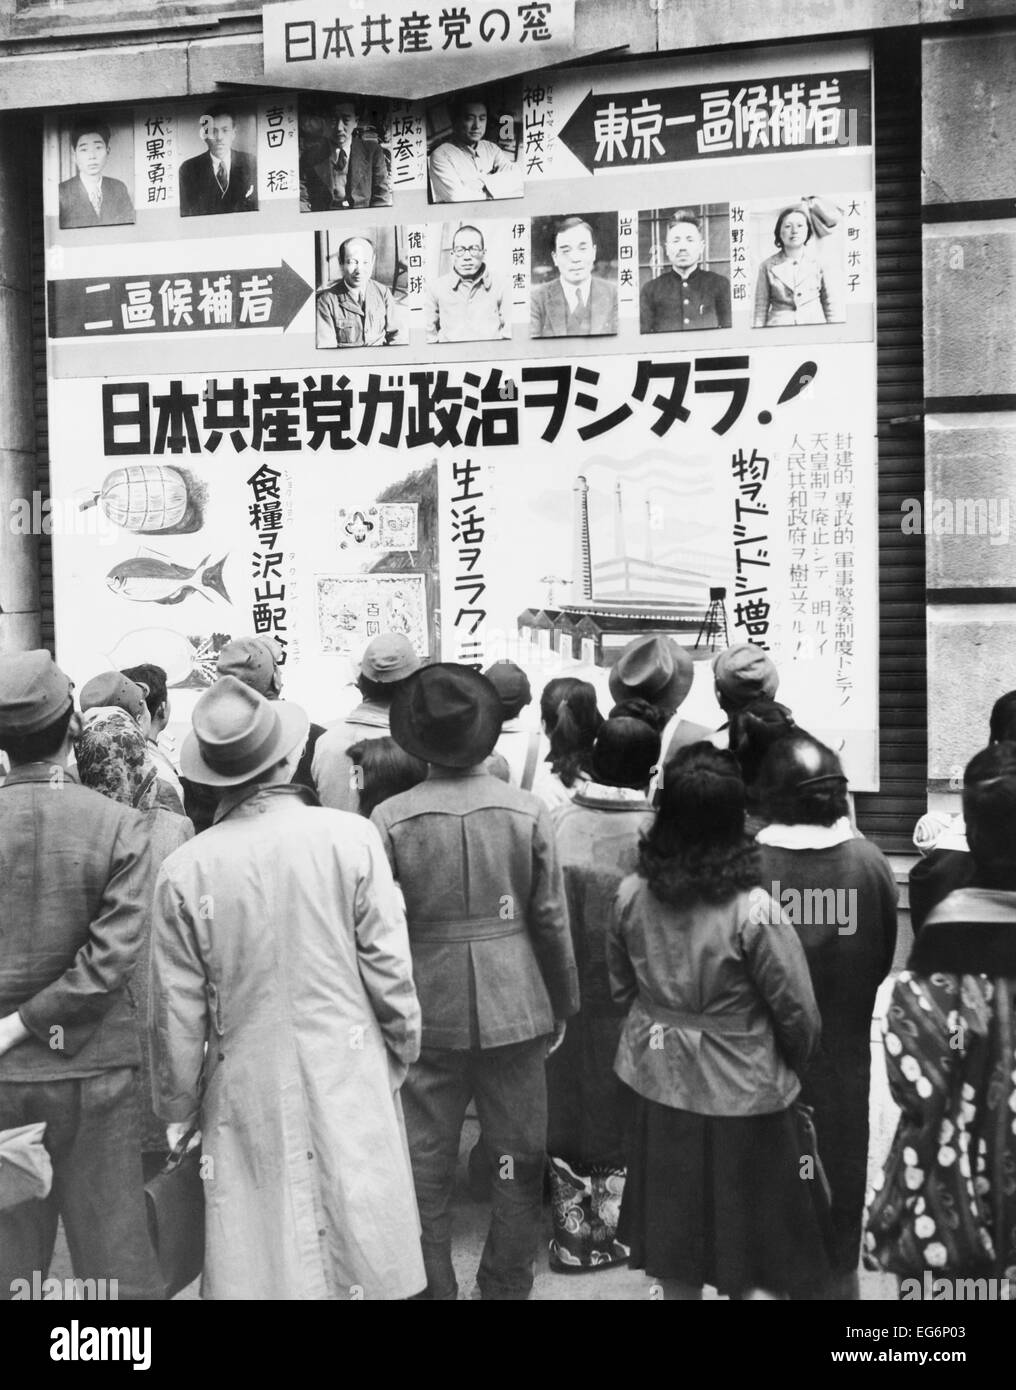 Japaner lesen ein Wahlplakat der kommunistischen Partei außerhalb der Mitsukoshi Kaufhaus. Tokio, Japan. 16. April 1946. - Stockfoto